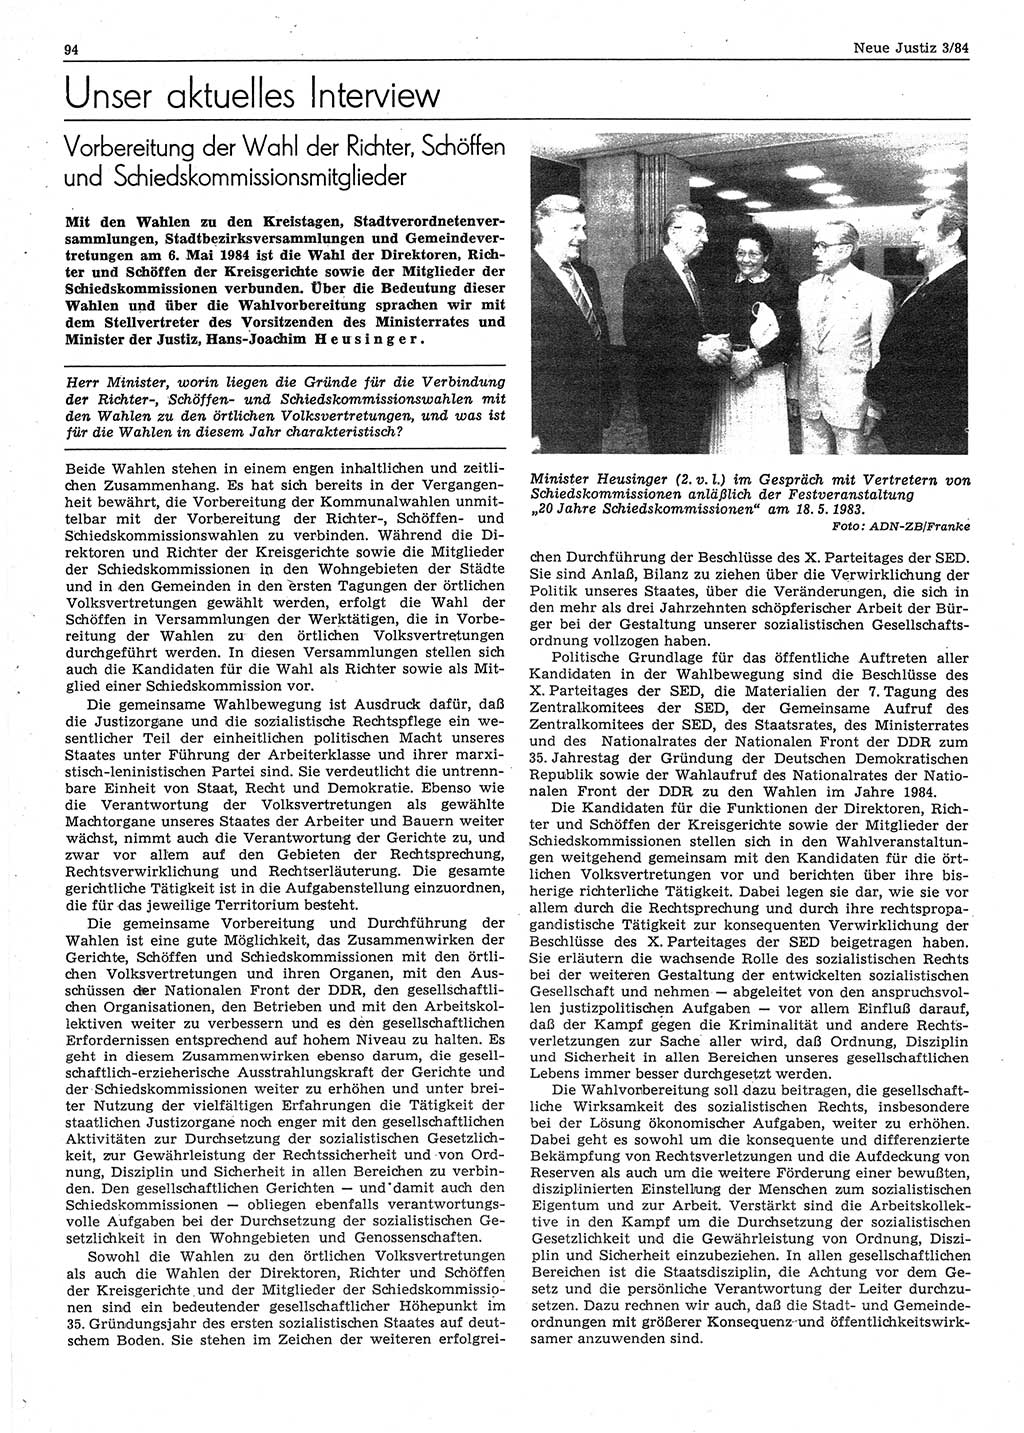 Neue Justiz (NJ), Zeitschrift für sozialistisches Recht und Gesetzlichkeit [Deutsche Demokratische Republik (DDR)], 38. Jahrgang 1984, Seite 94 (NJ DDR 1984, S. 94)